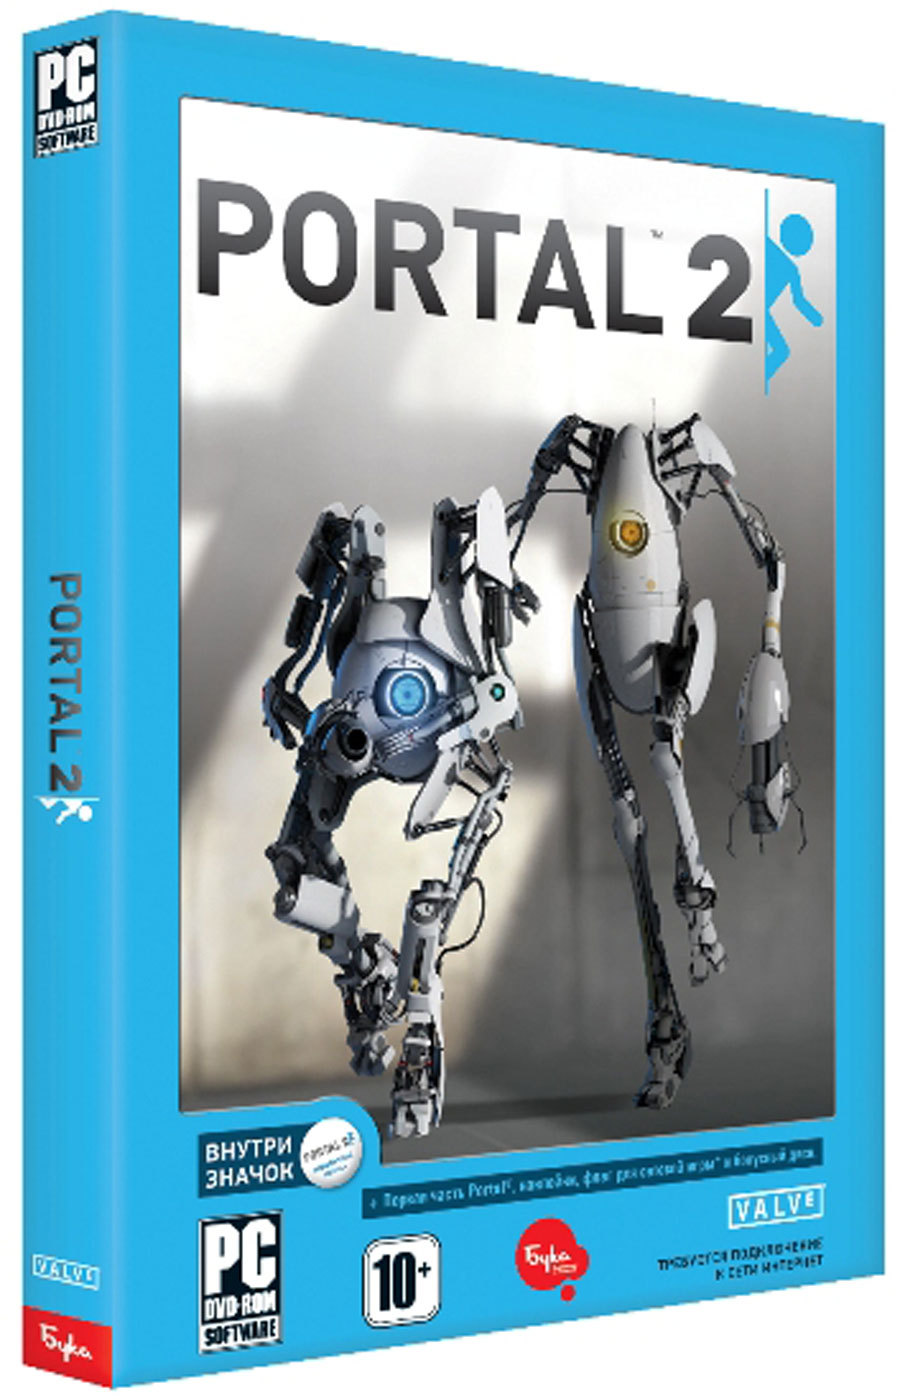 Portal_2_light-1